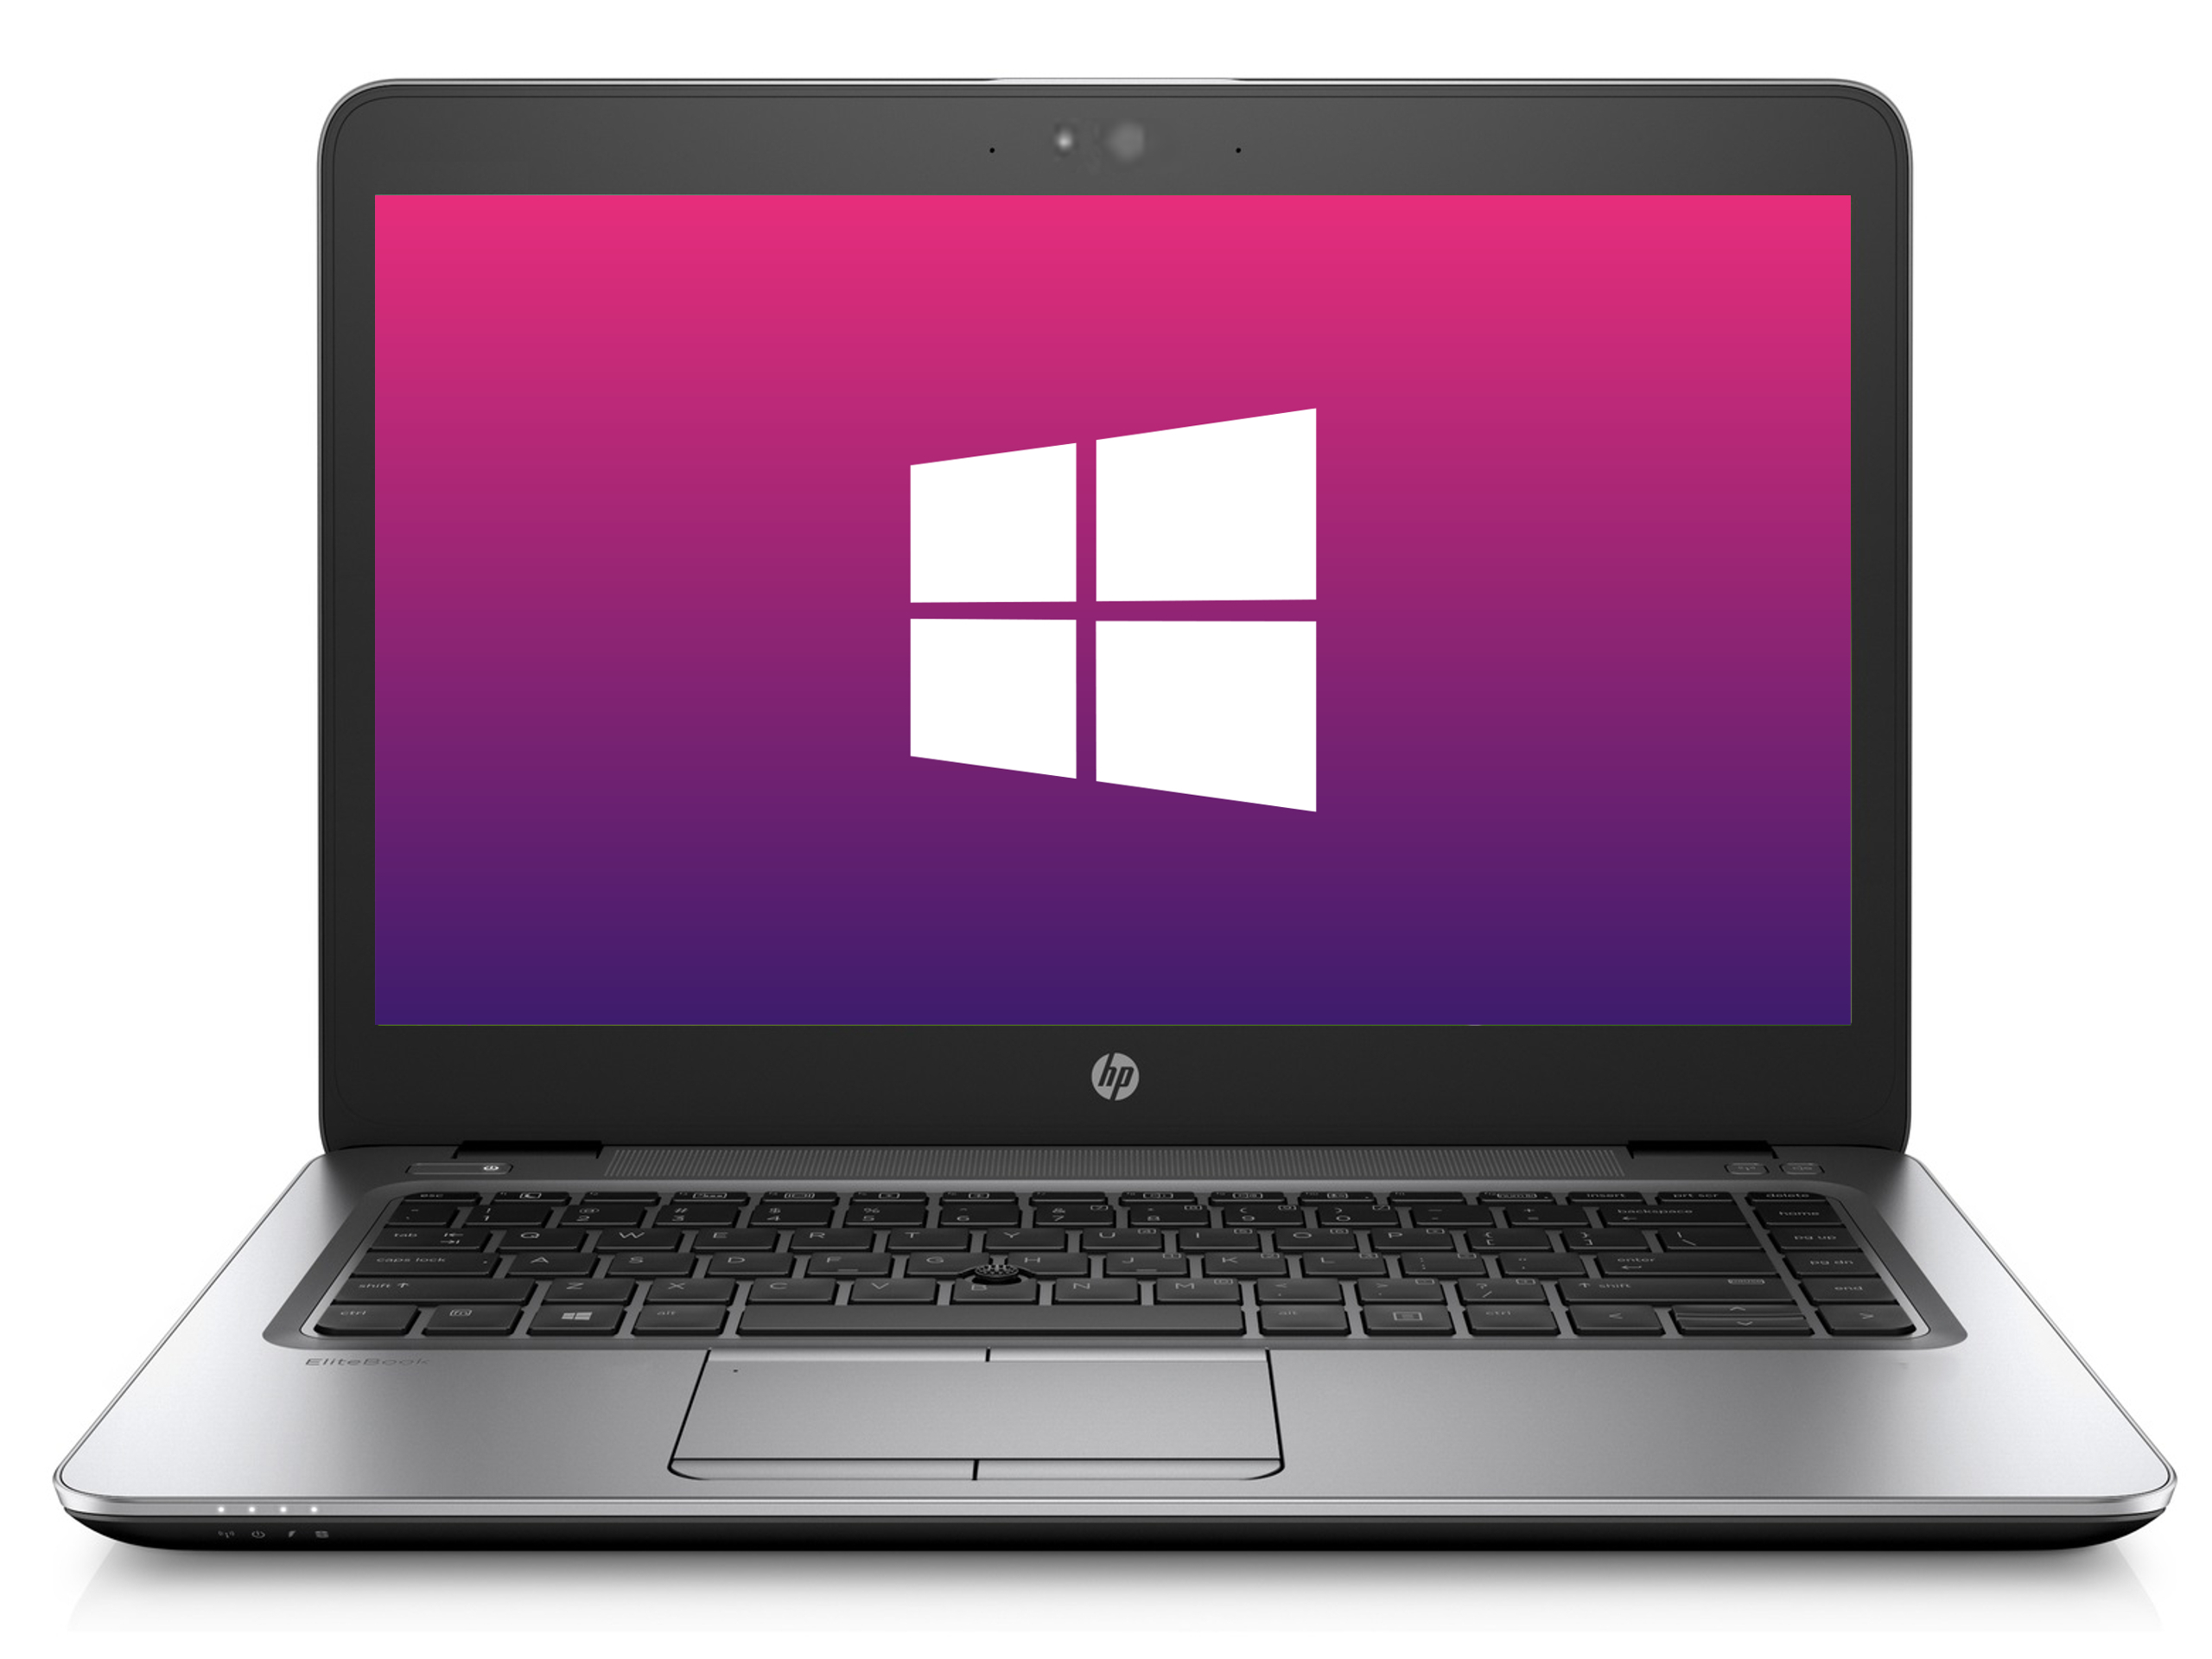 Ultrabook HP 850 G3 * 1366x768* 8GB * 240GB SSD